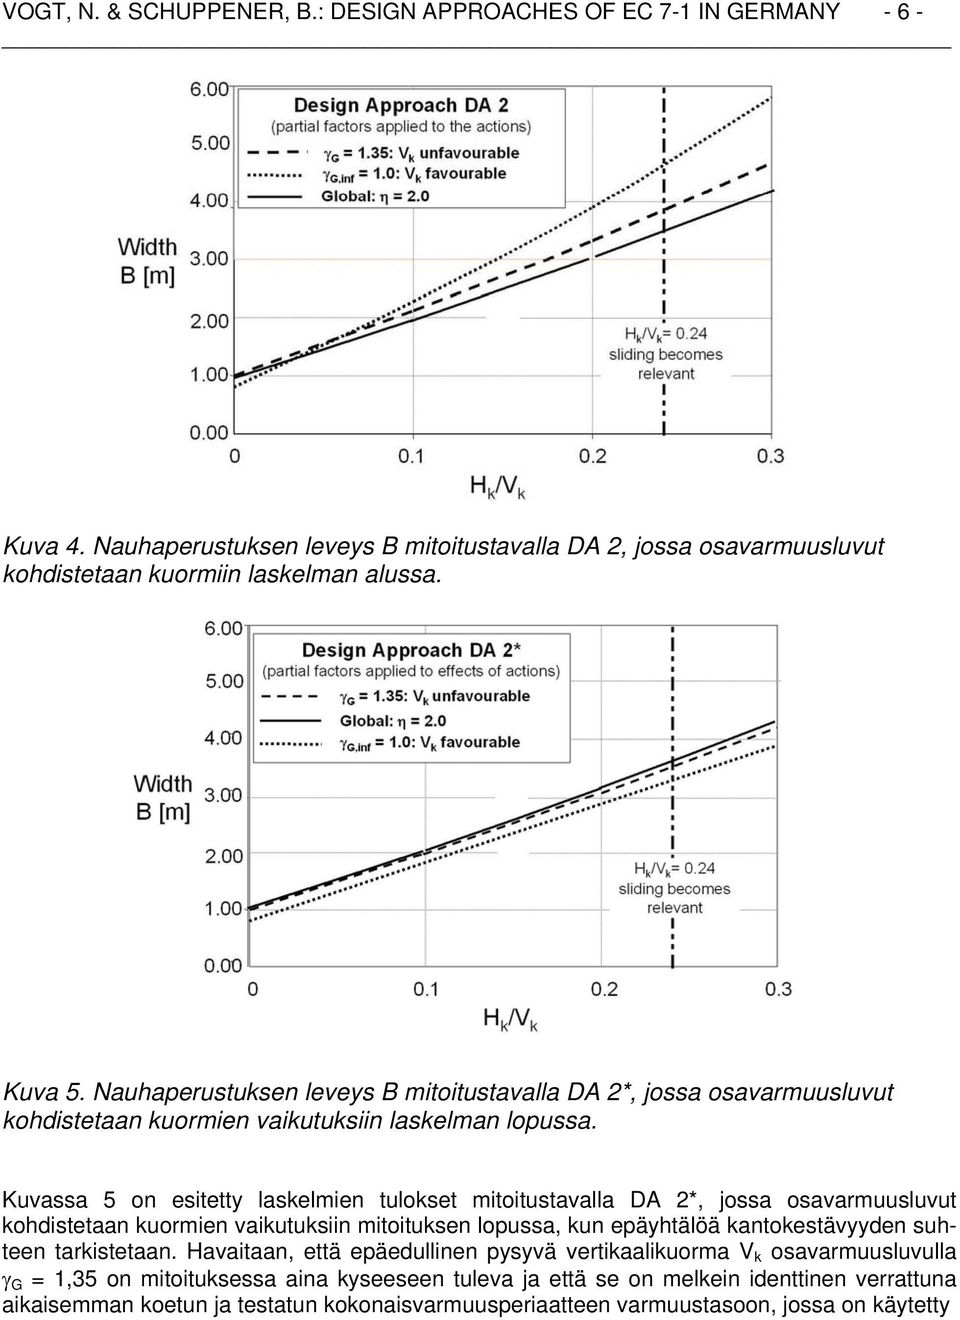 Kuvassa 5 on esitetty laskelmien tulokset mitoitustavalla DA 2*, jossa osavarmuusluvut kohdistetaan kuormien vaikutuksiin mitoituksen lopussa, kun epäyhtälöä kantokestävyyden suhteen